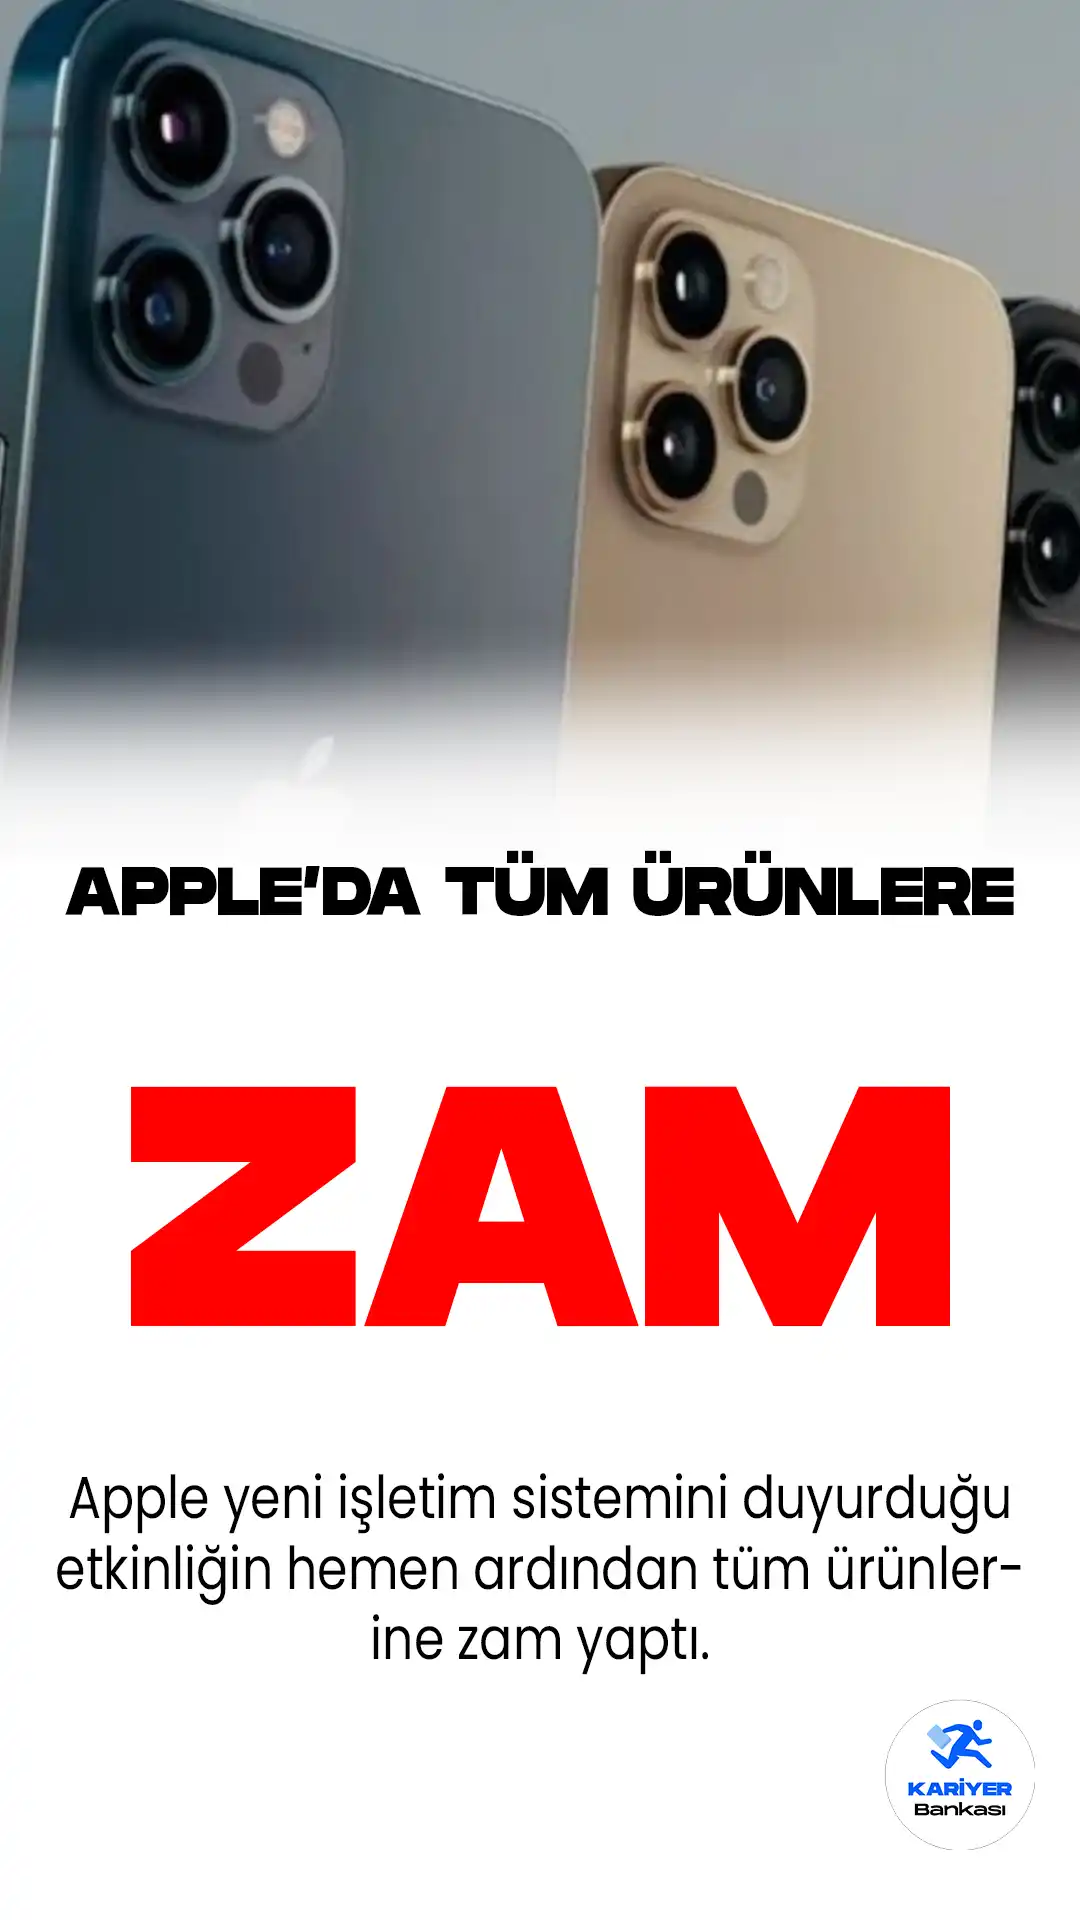 Apple, WWDC 23 etkinliğinin ardından Türkiye'de satışa sunulan ürünlerinin fiyatlarında zam yaptı. Apple güncel fiyatları ve diğer detaylar...